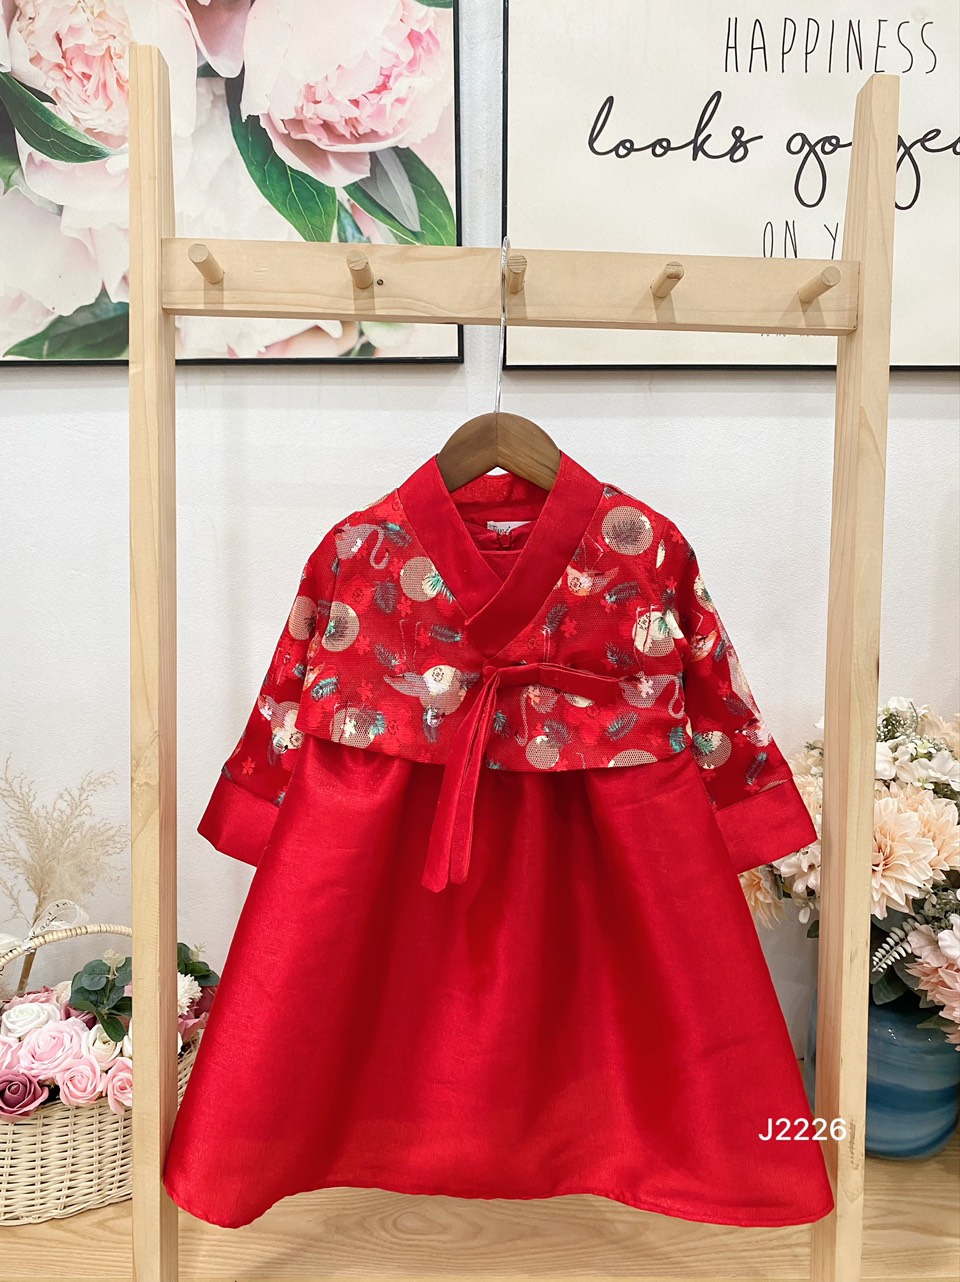 Tìm hiểu nét đẹp truyền thống của bộ trang phục Hanbok - 0908 910 445